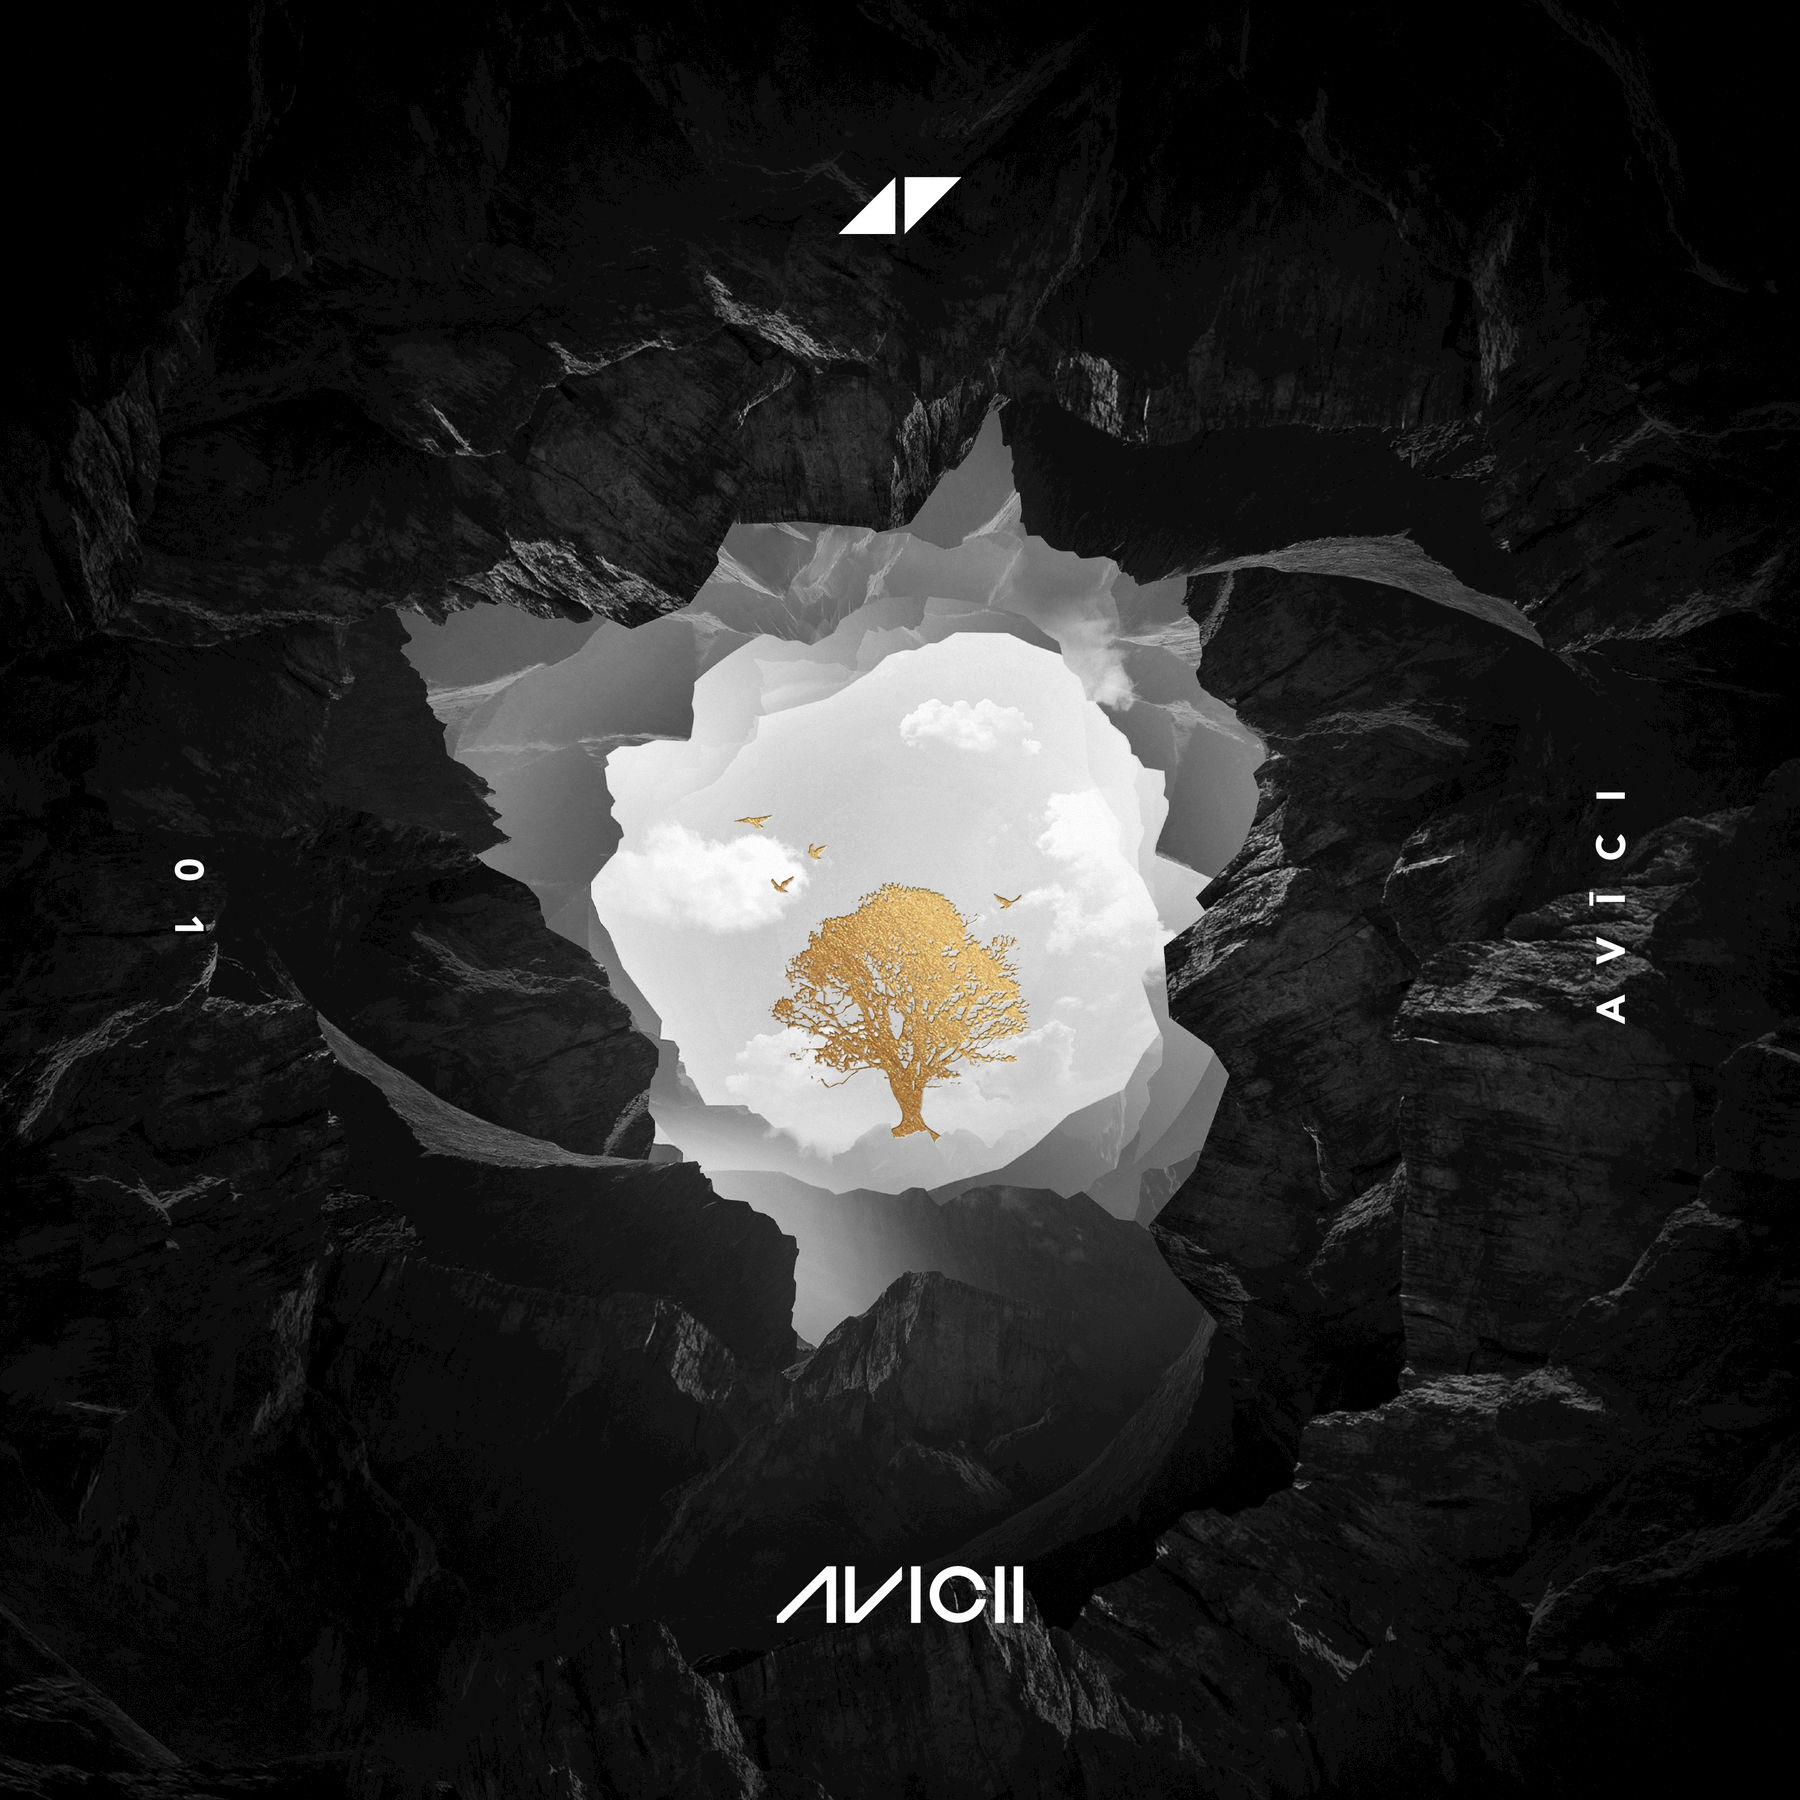 Friend of Mine歌词 歌手Avicii / Vargas & Lagola-专辑AVĪCI (01)-单曲《Friend of Mine》LRC歌词下载